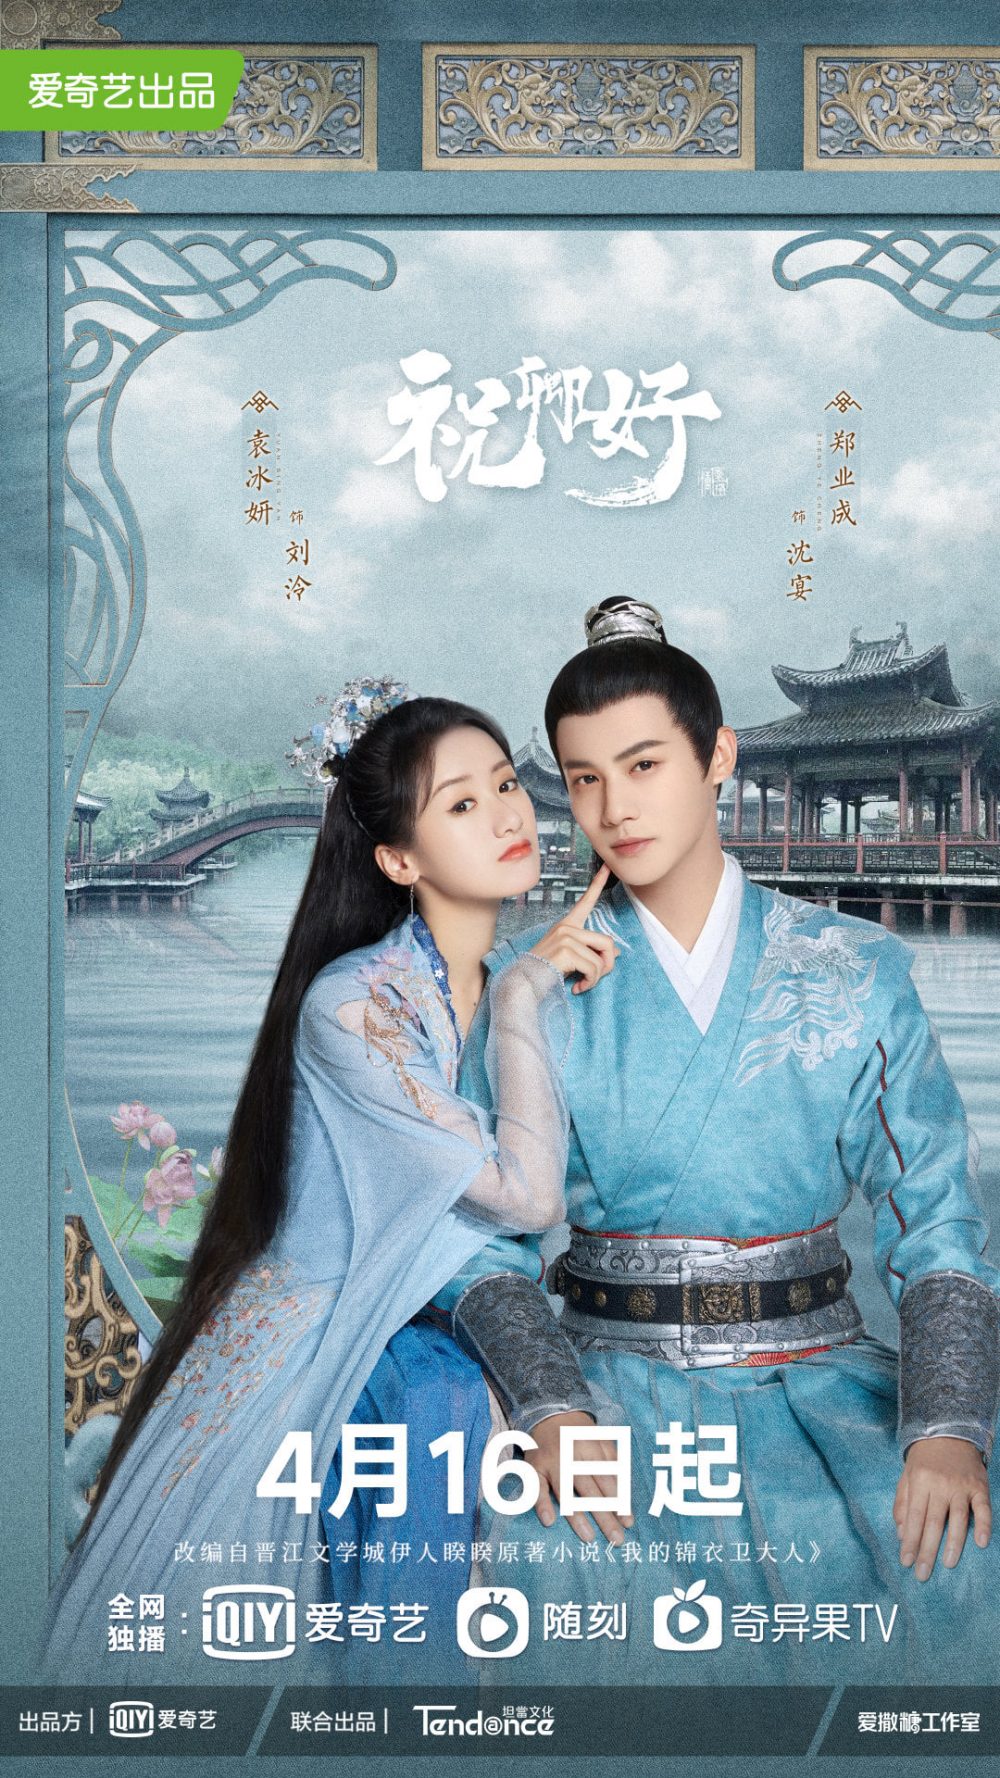 Phim mới của Viên Băng Nghiên: Chúc khanh hảo - My Sassy Princess (2022)